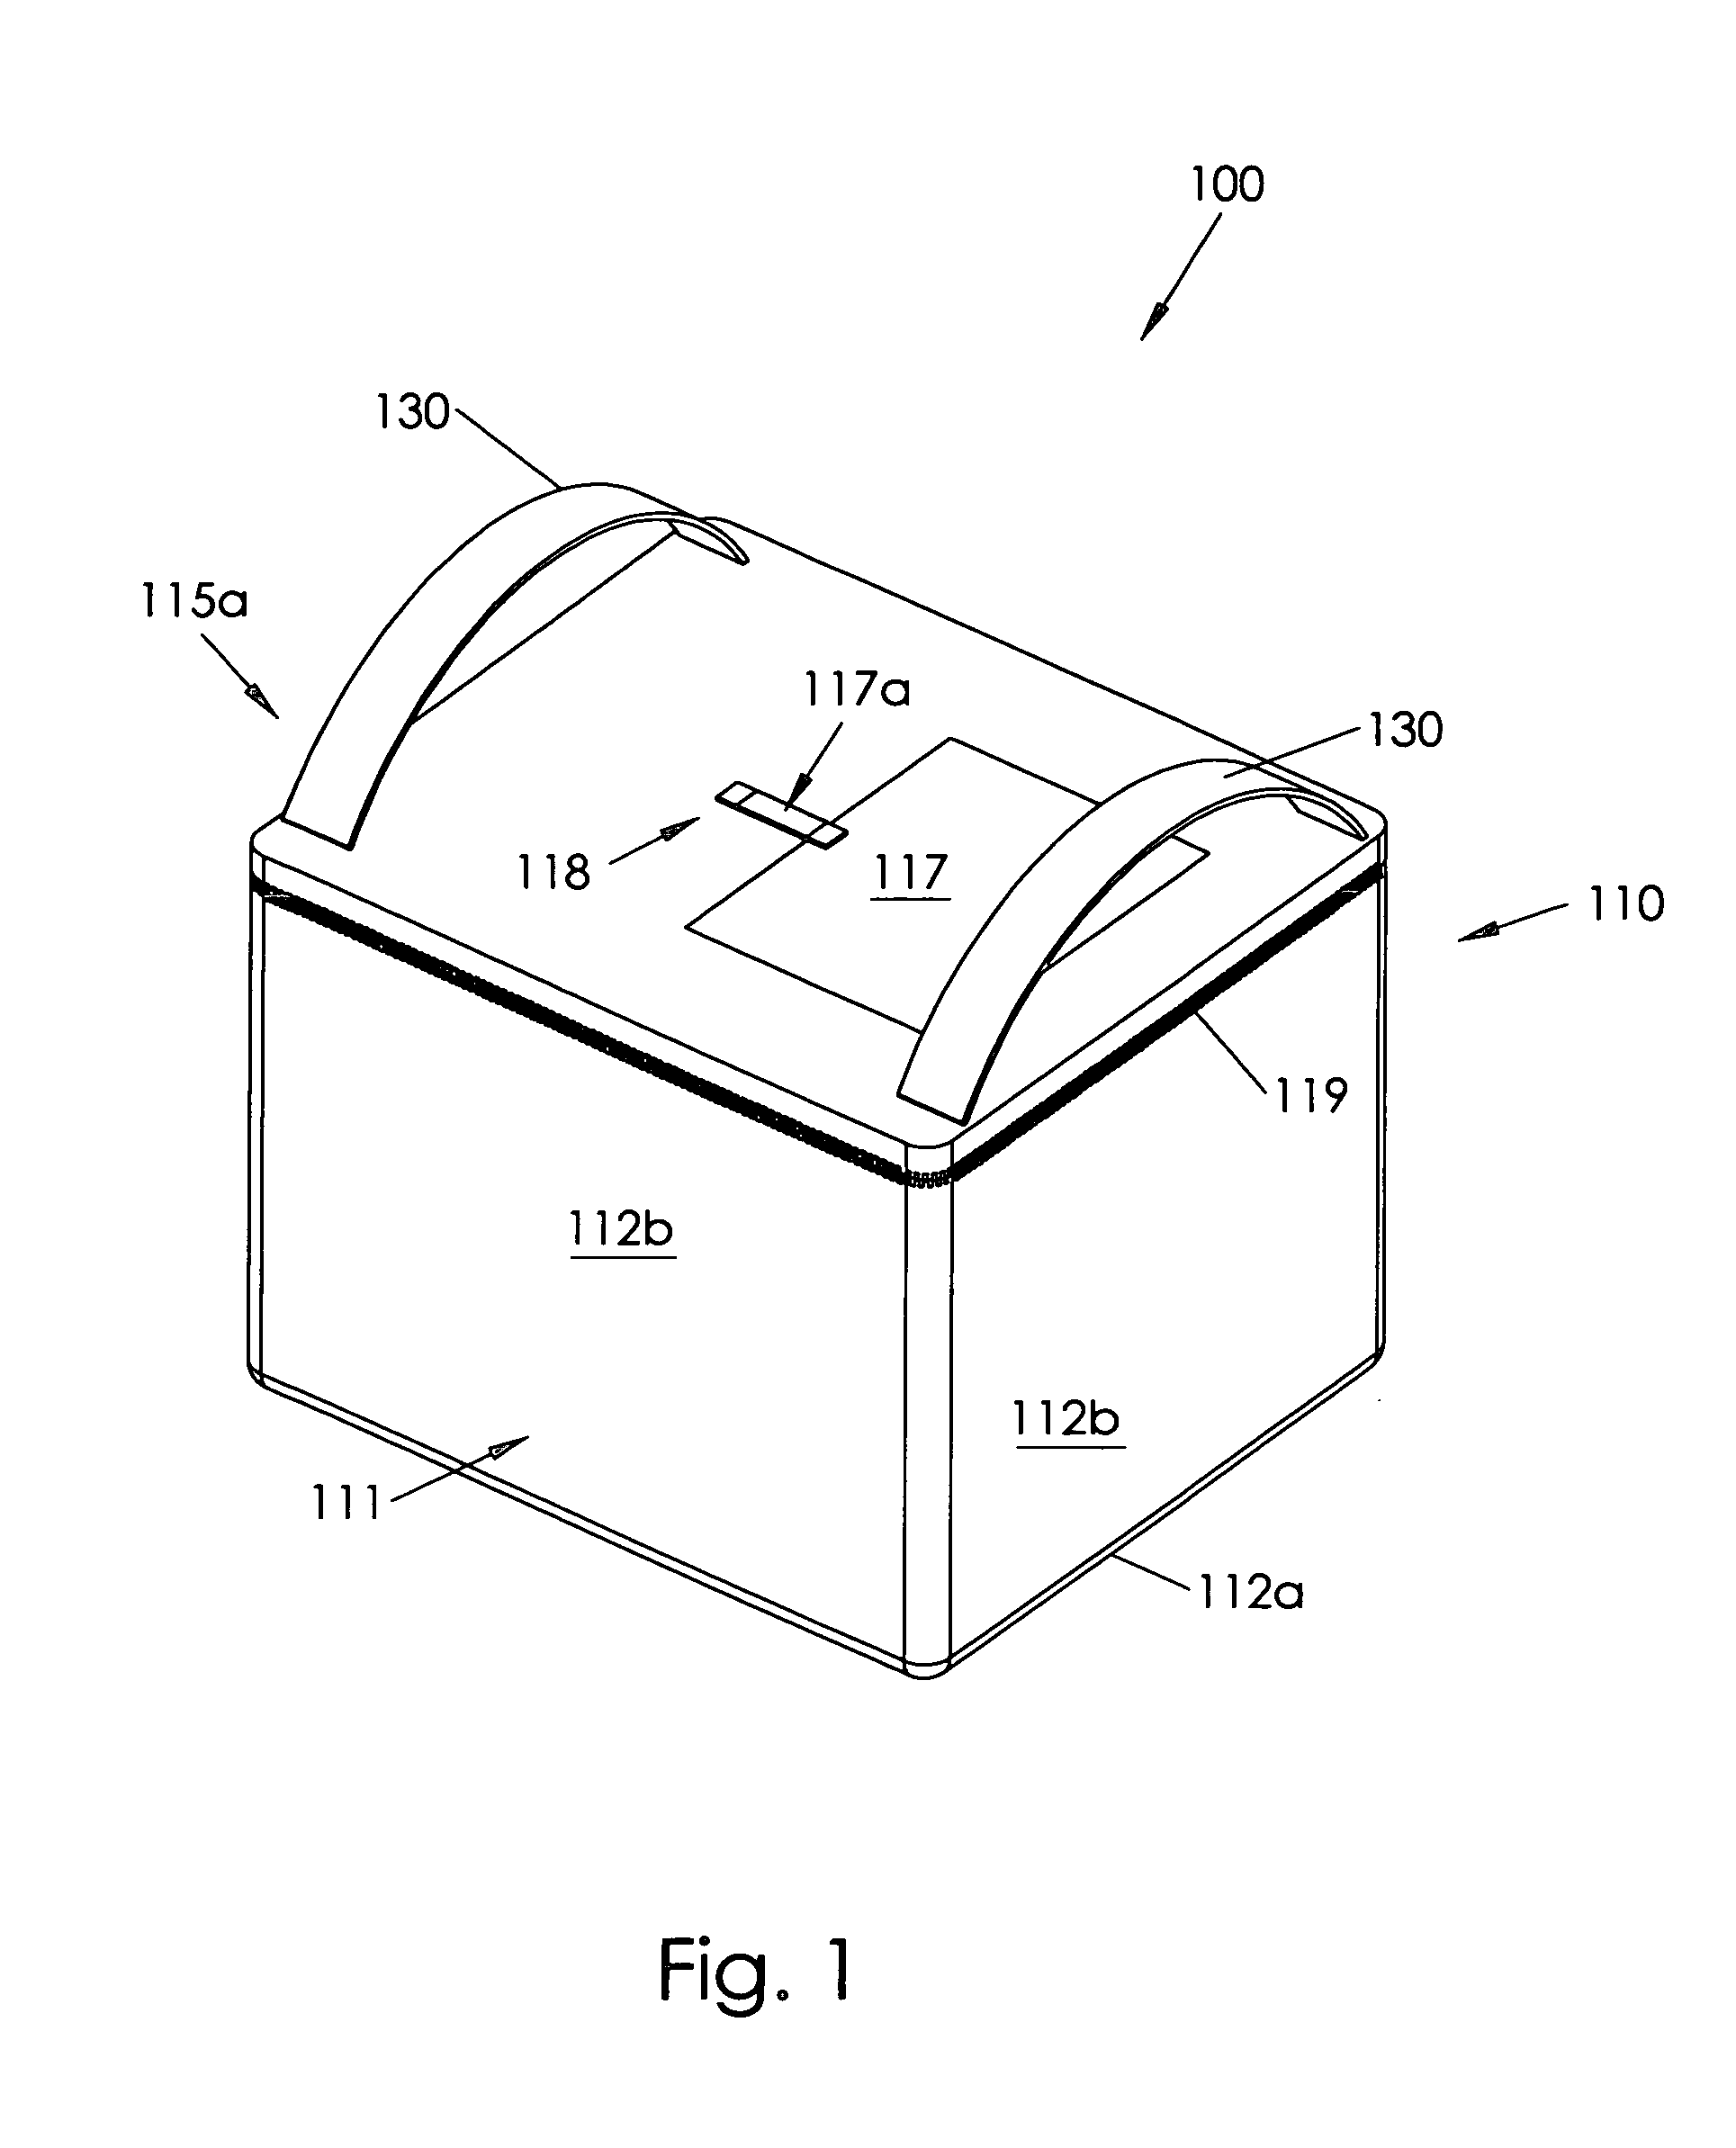 Insulating container